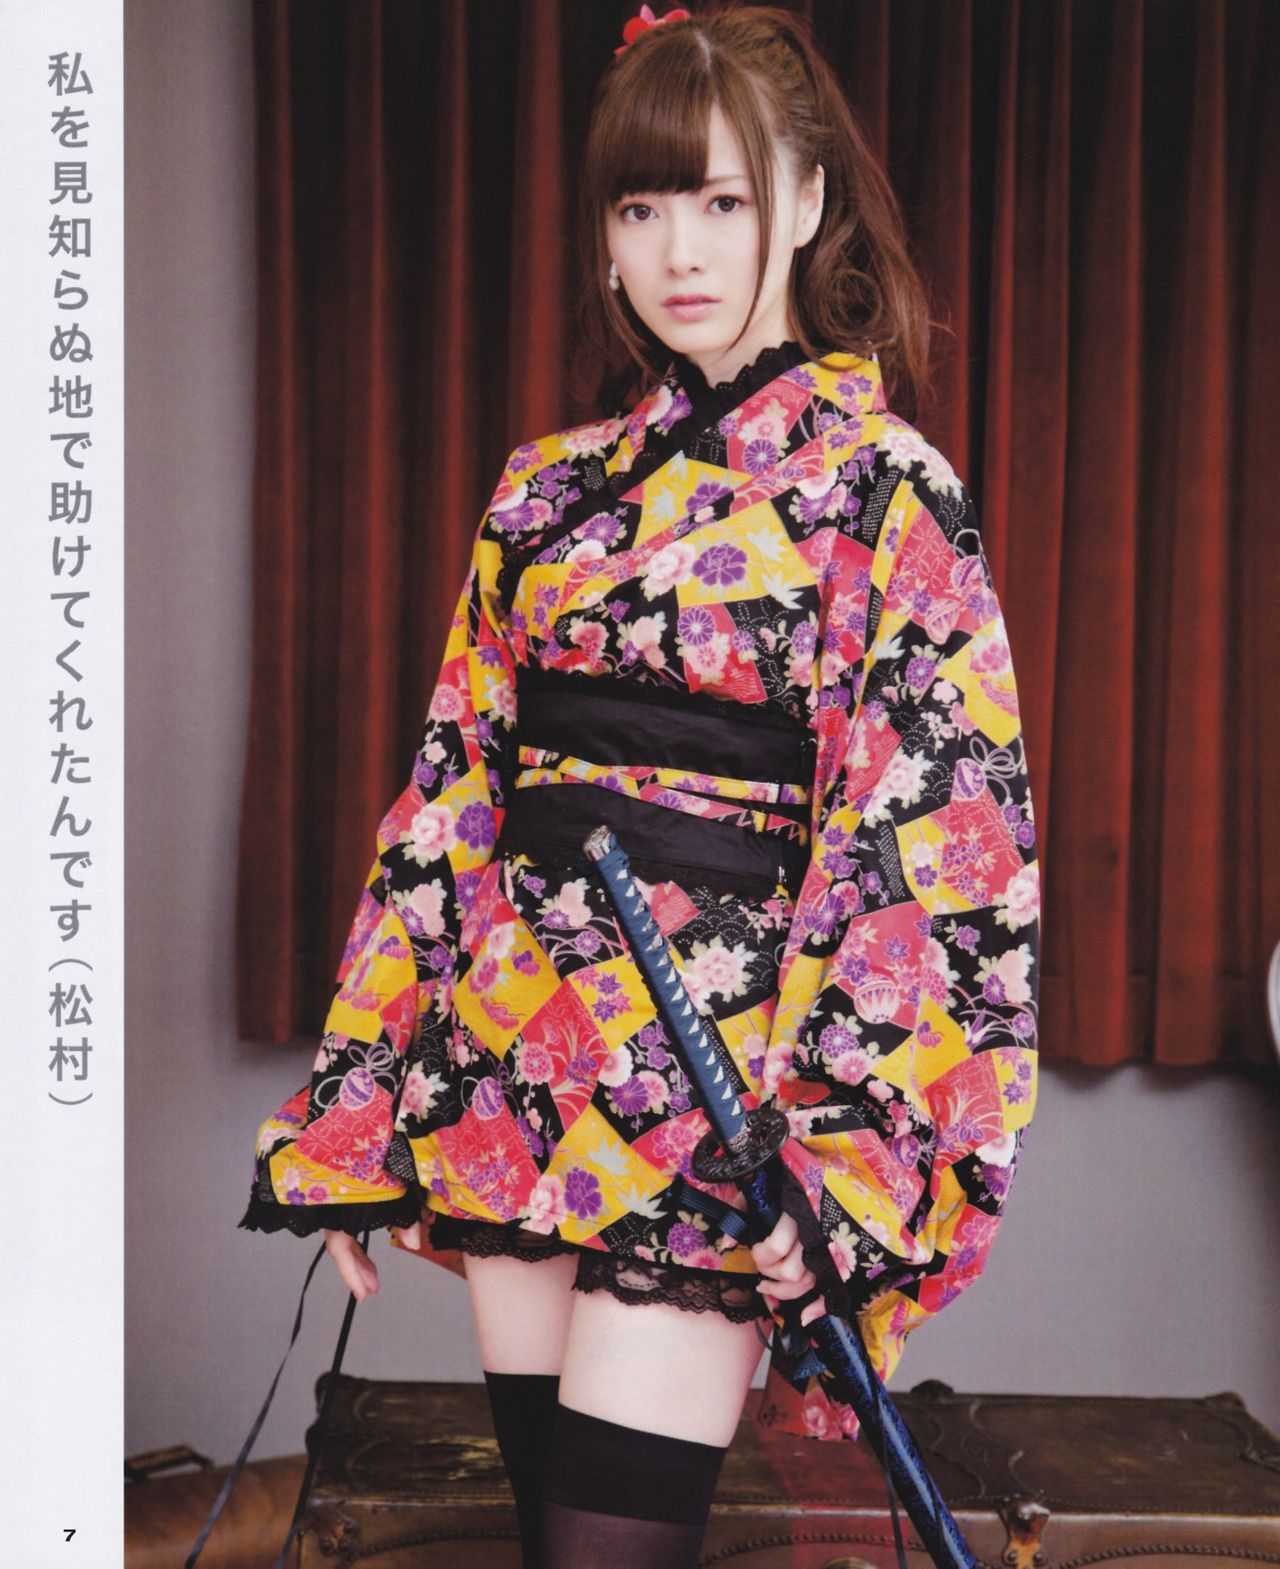 Nogizaka46 Pop KPOP Image Board